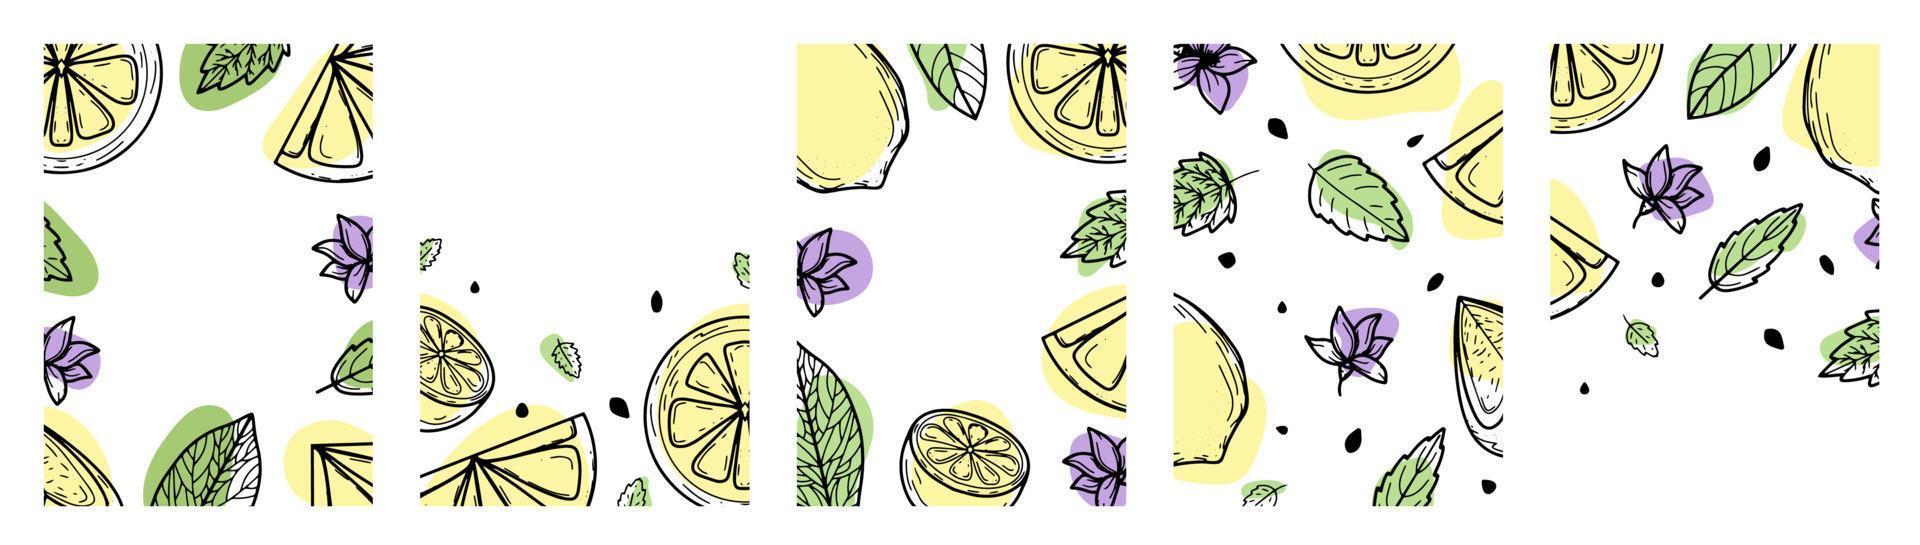 impostare lo sfondo con limone, fiori, foglie. illustrazione vettoriale disegnata a mano di frutta. nello stile di un'incisione con macchie colorate.agrumi, disegno botanico. per poster, stampe, sfondi, copertine